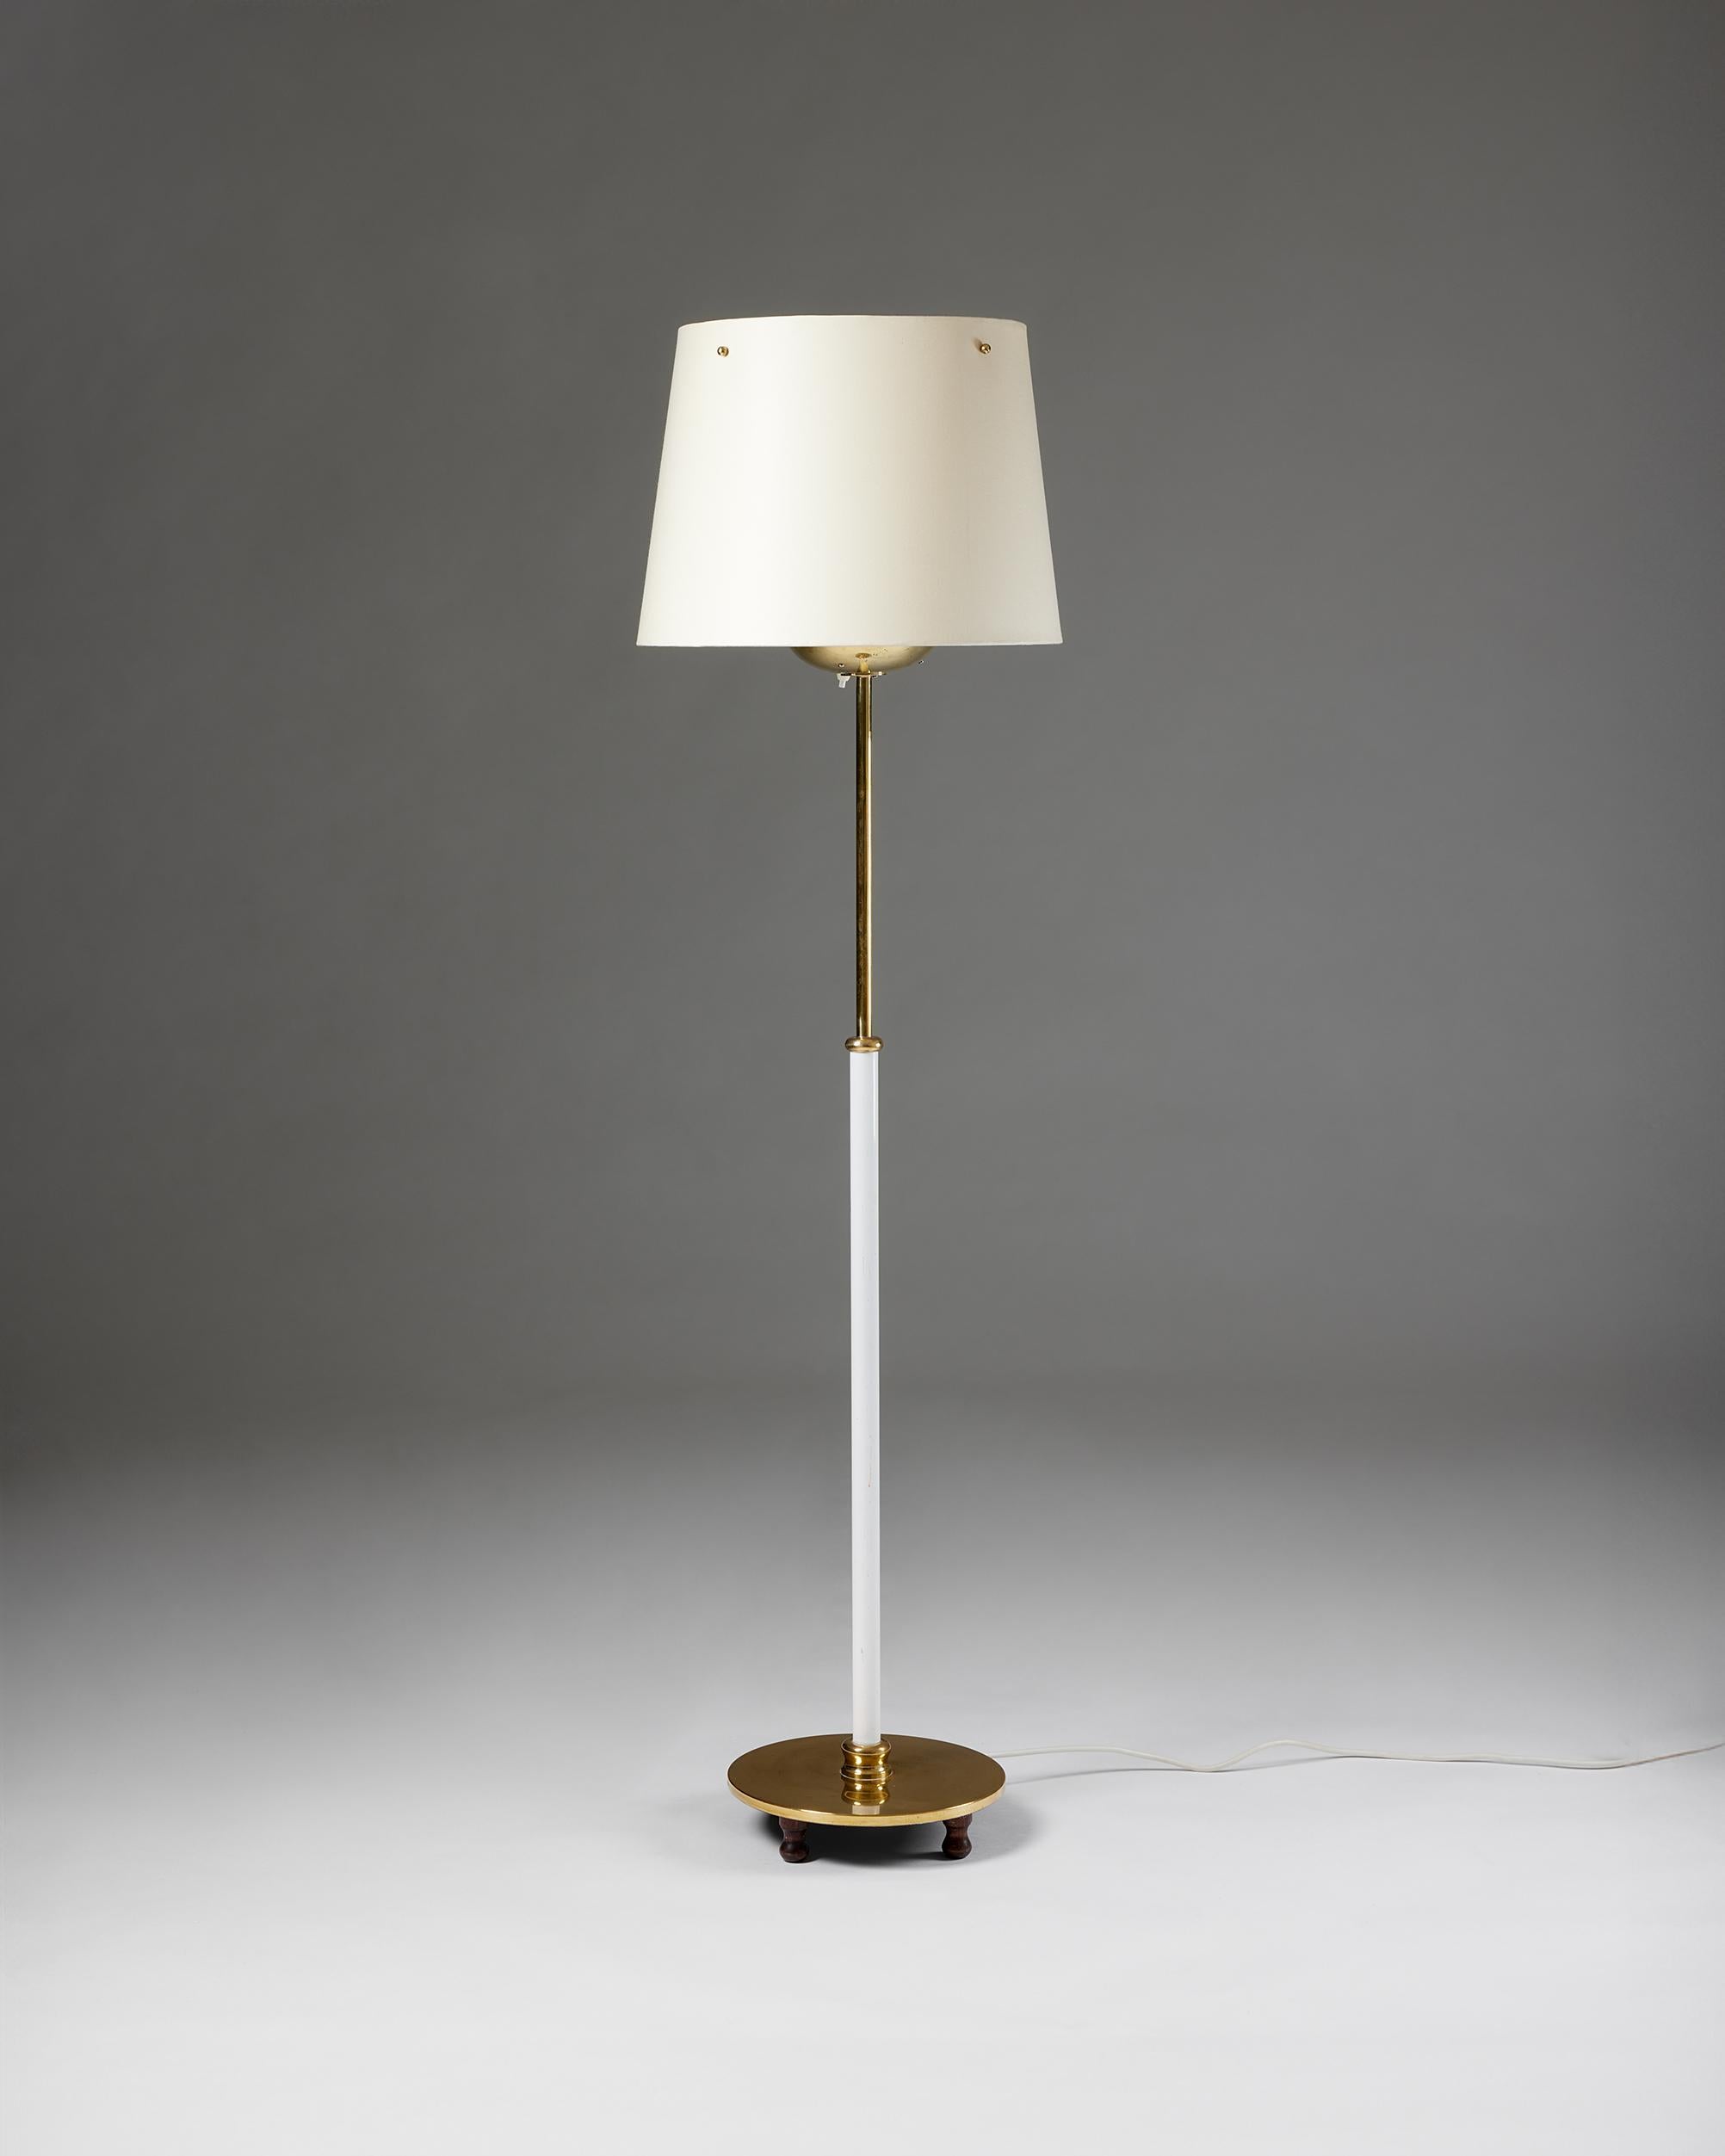 Floor lamp model 2564 designed by Josef Frank for Svenskt Tenn,
Sweden, 1950s
White lacquered brass and lacquered paper

H: 150 cm /4' 11